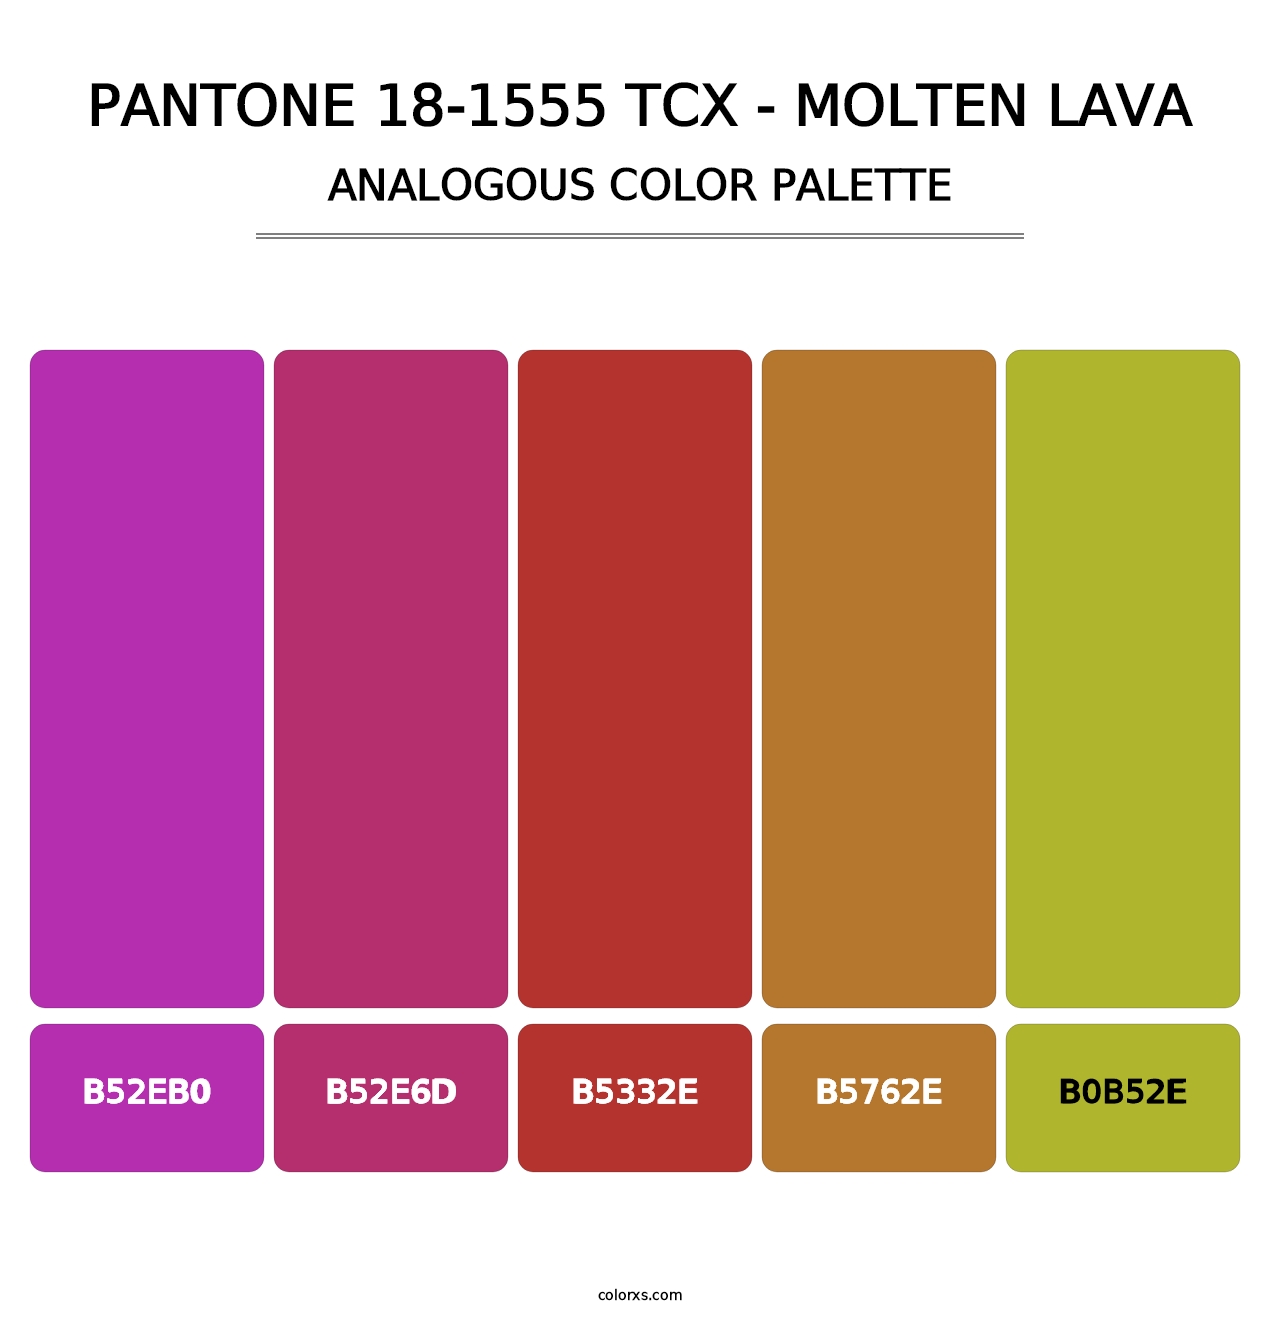 PANTONE 18-1555 TCX - Molten Lava - Analogous Color Palette